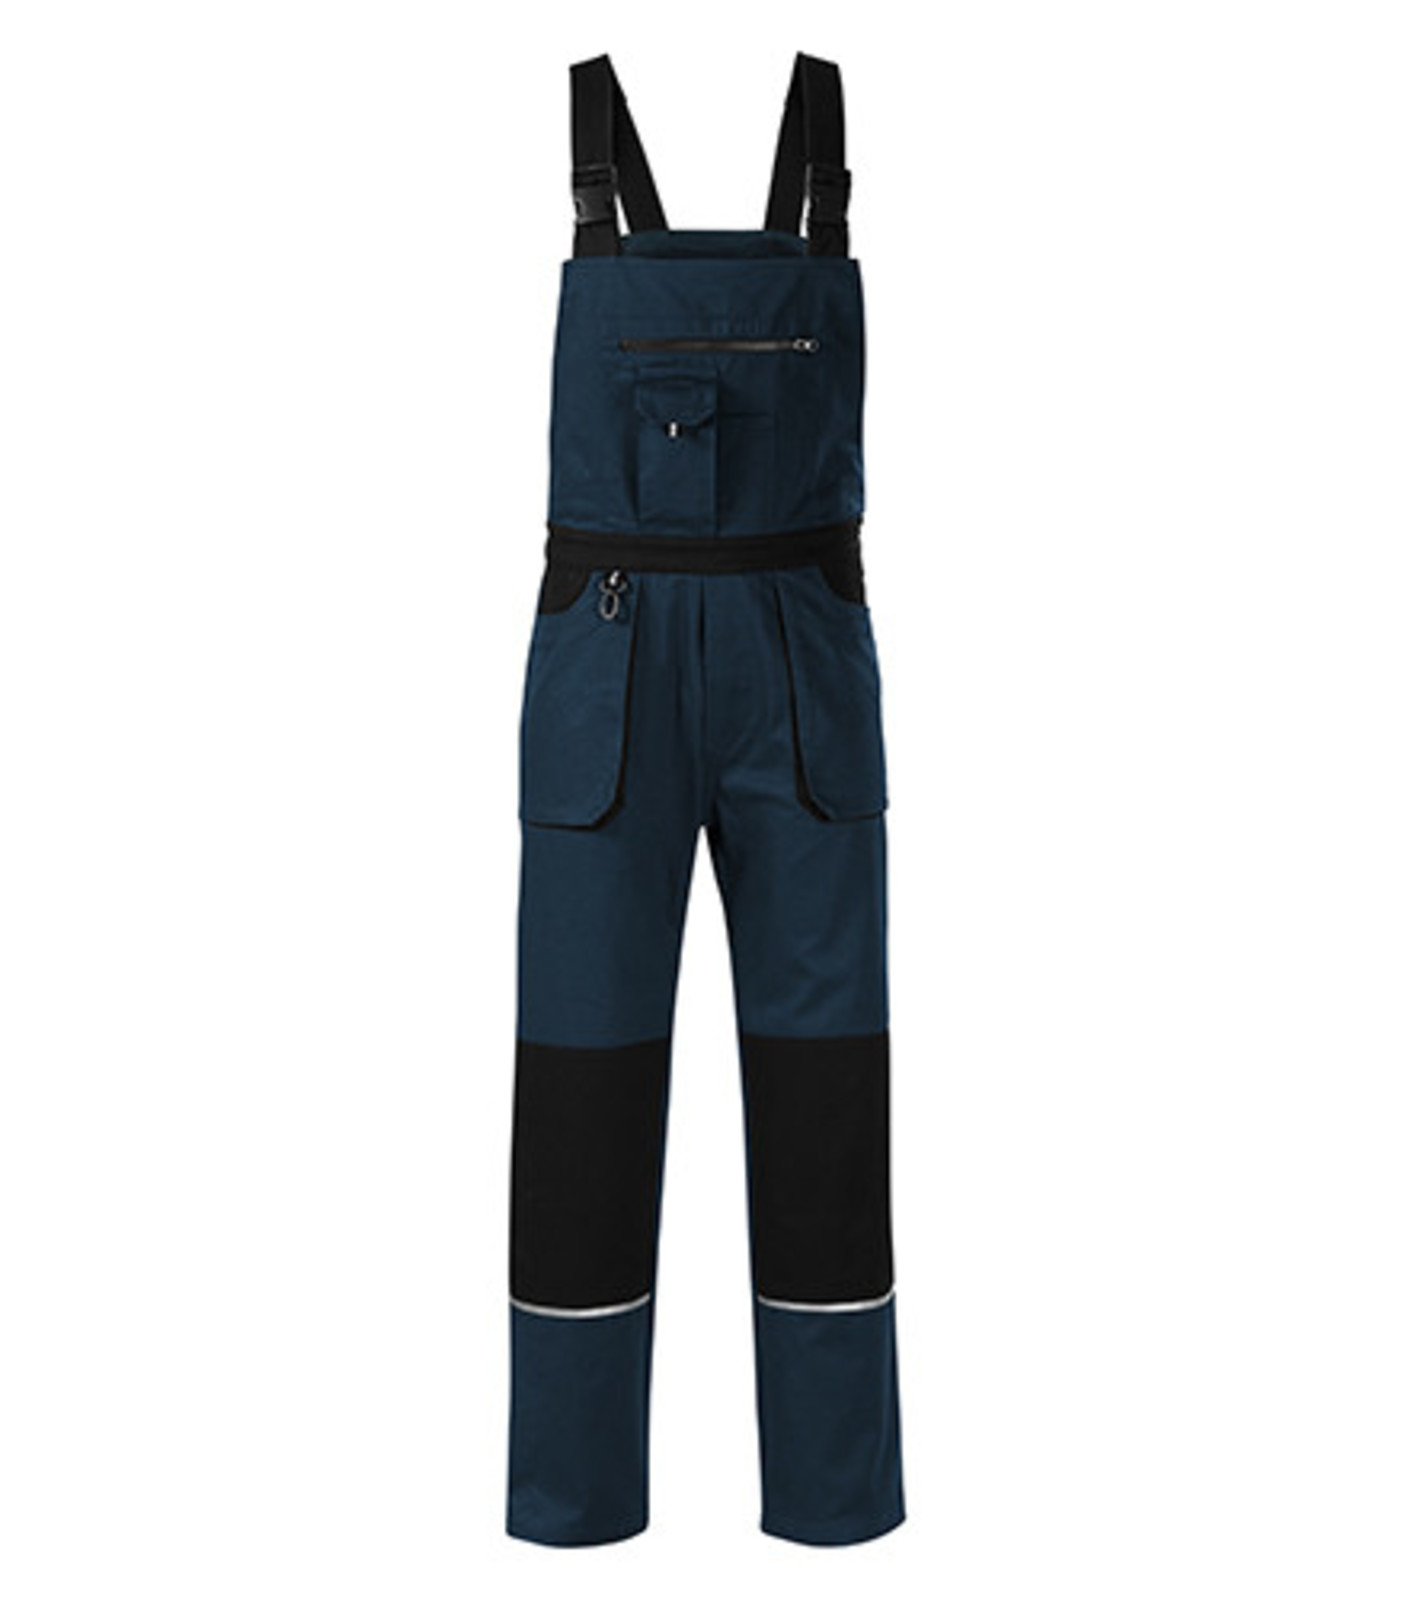 Montérkové nohavice s náprsenkou Adler Woody W02 - veľkosť: 60-62, farba: tmavo modrá